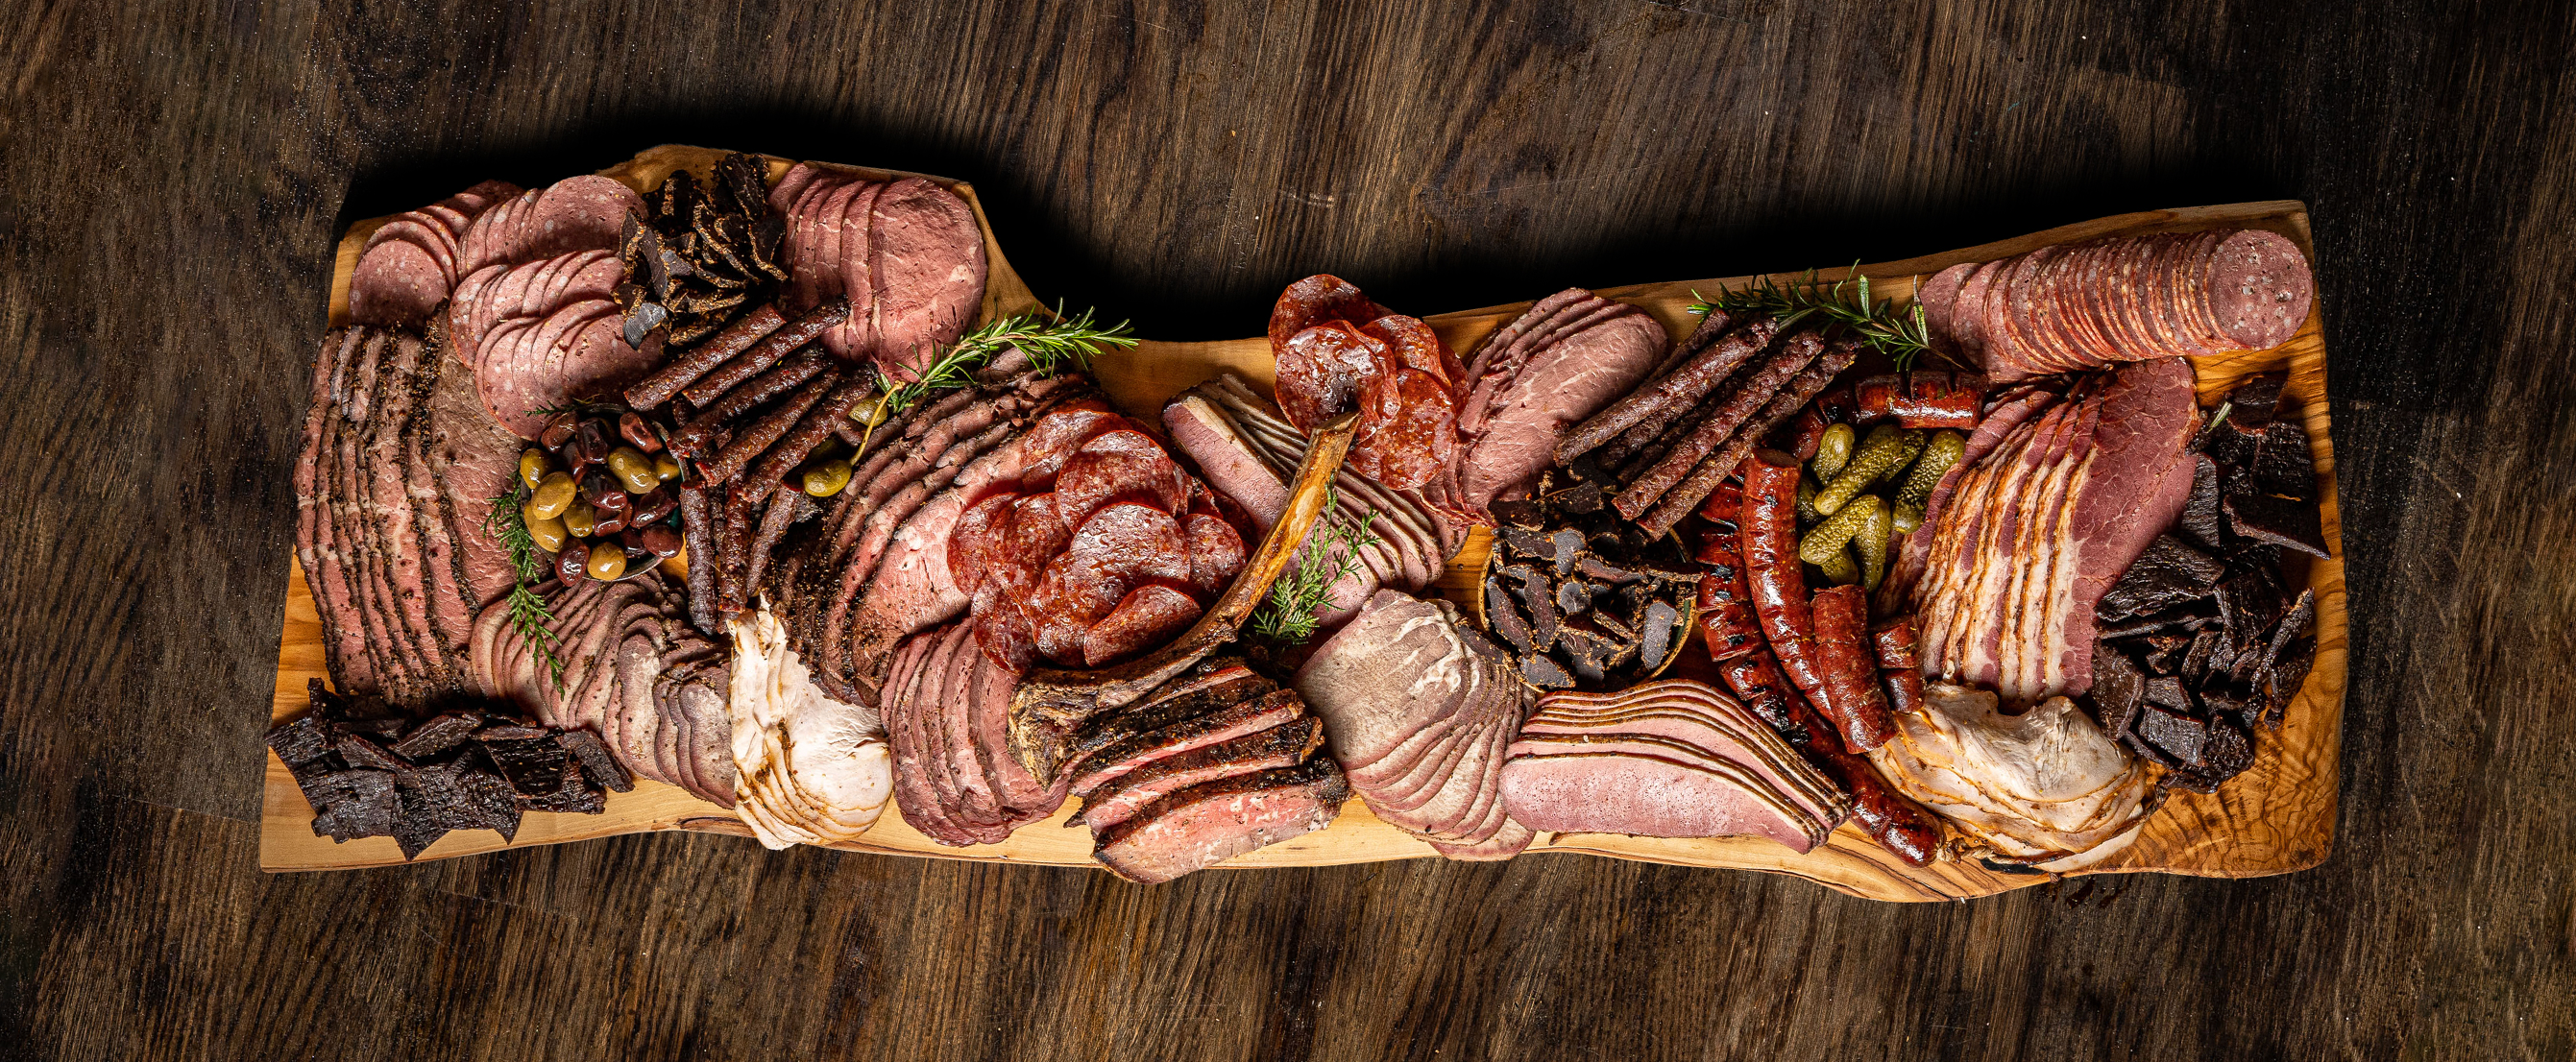 Best Meat Board - Delicious Smoked Meat Platter - Yoelis Smokehouse Jerusalem